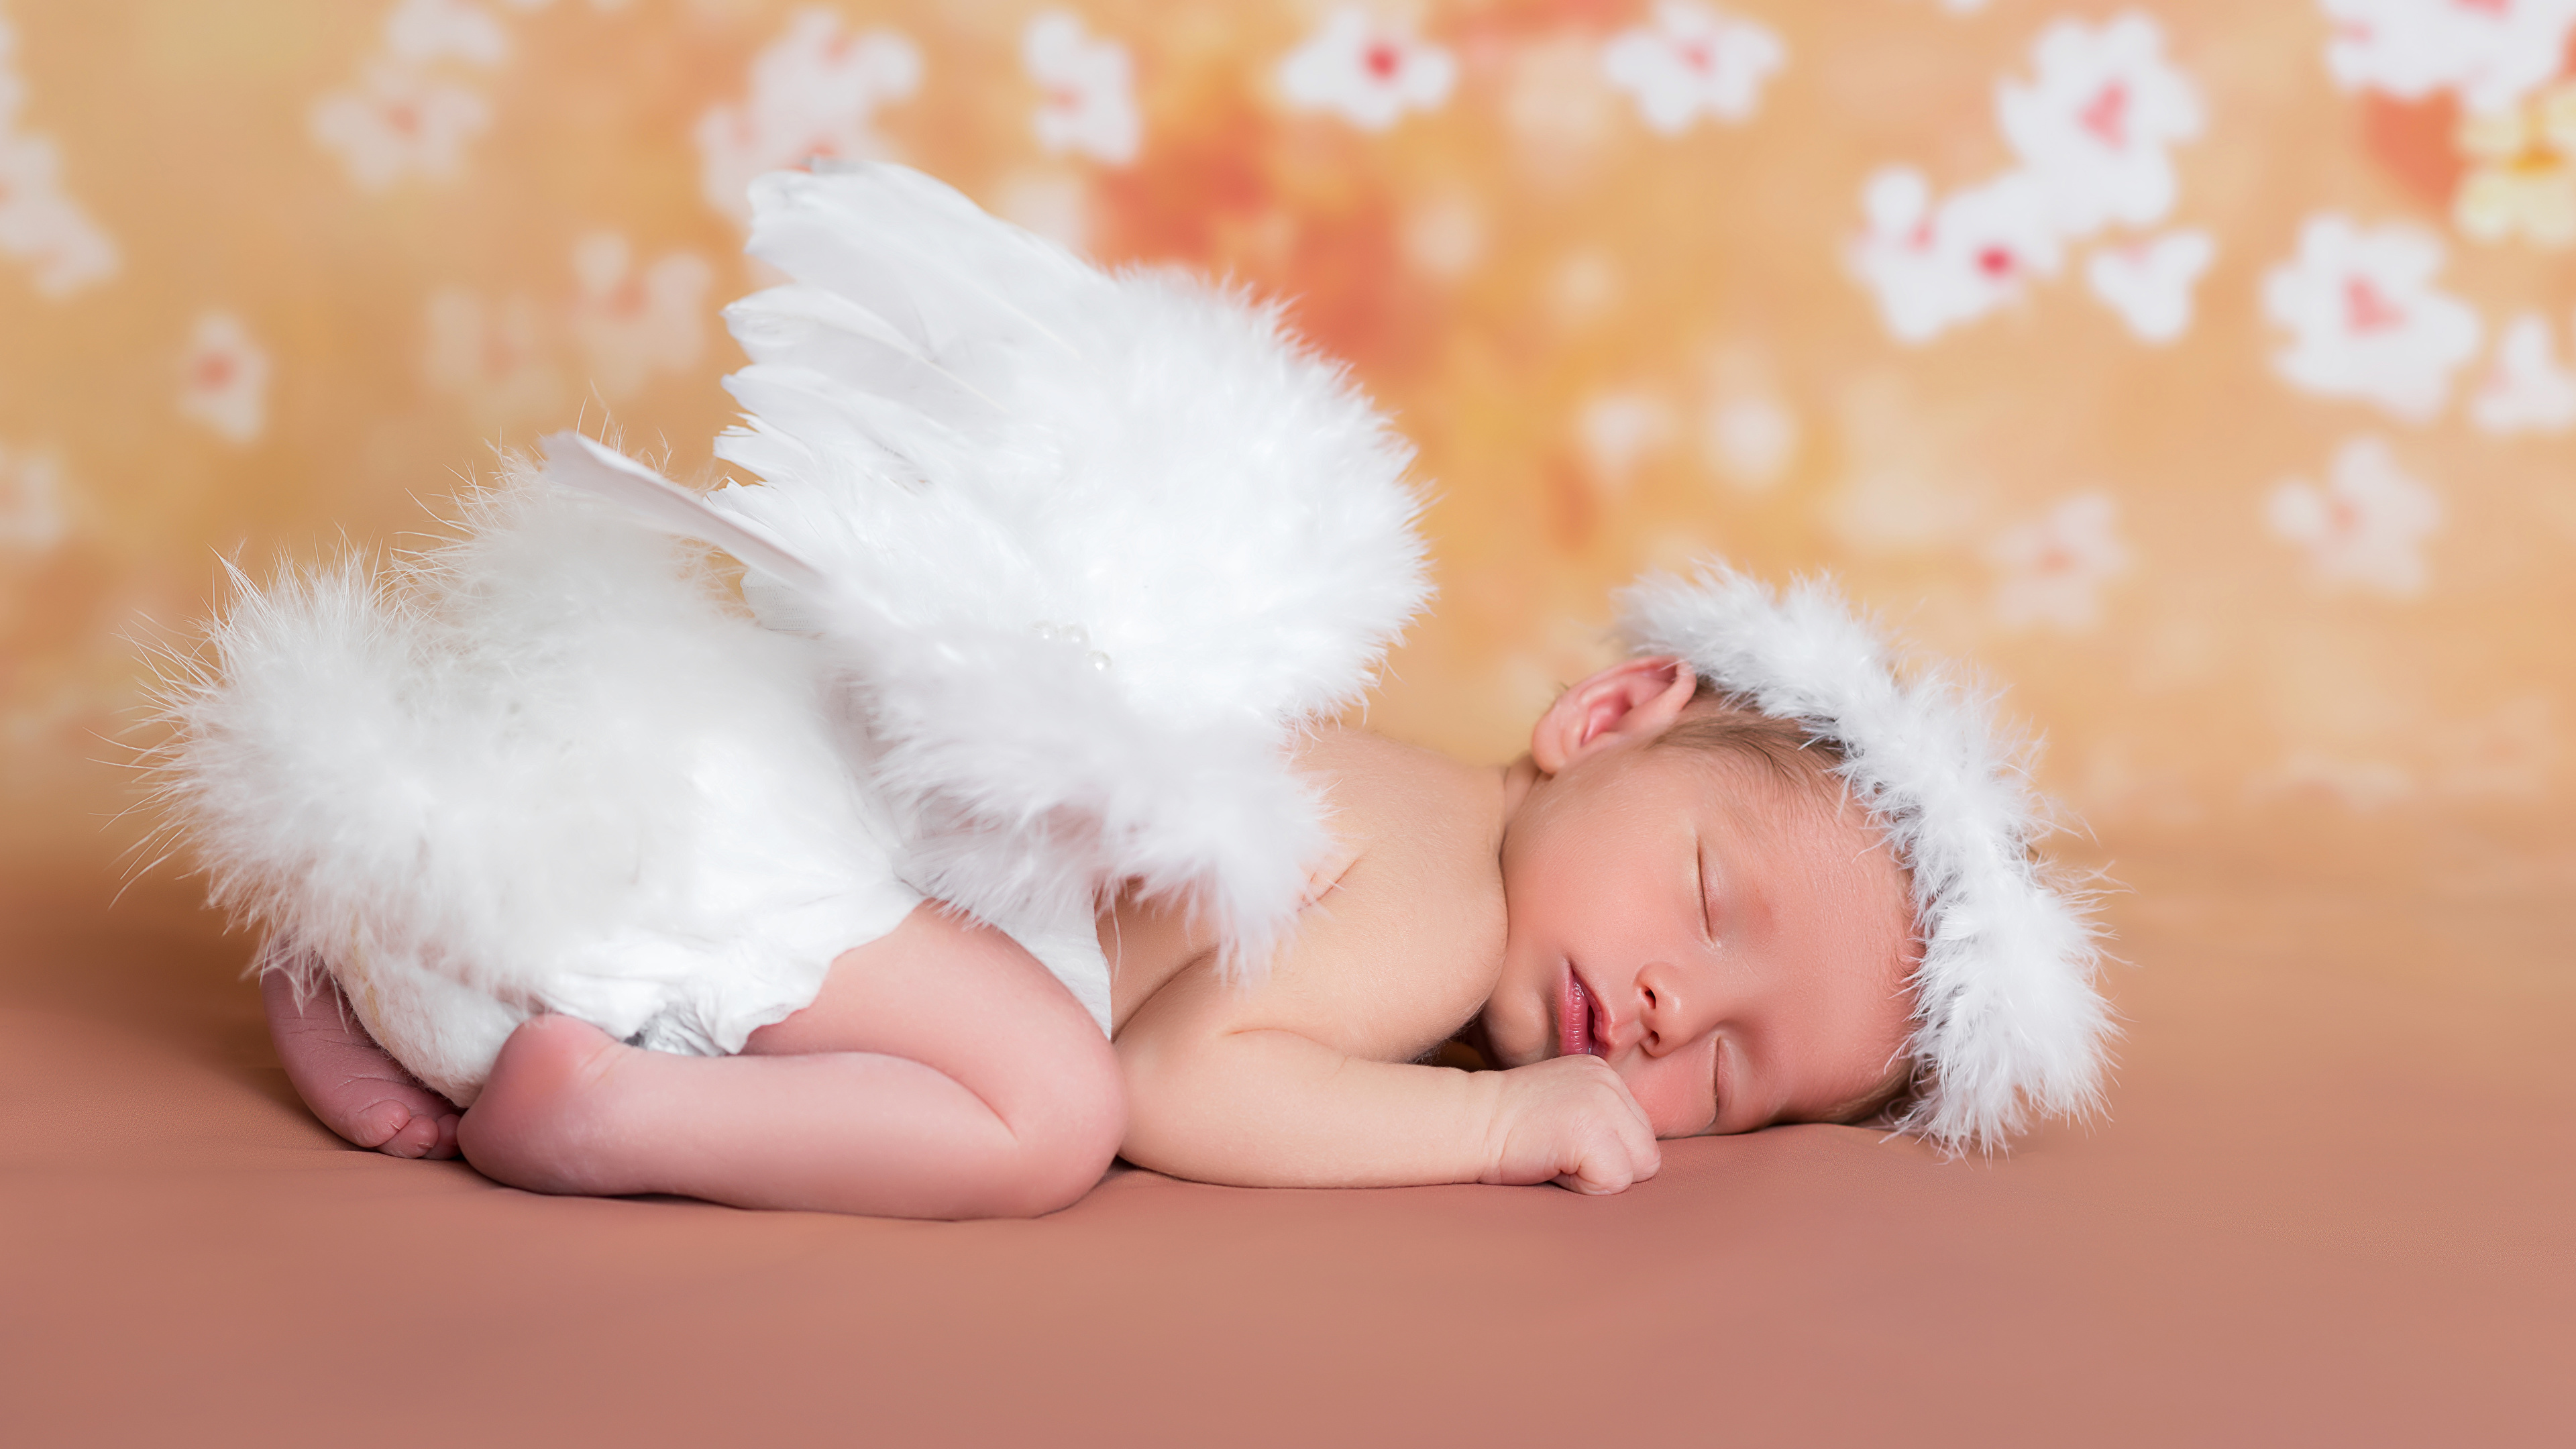 壁紙 3840x2160 天使 赤ちゃん 眠る 翼 子供 ダウンロード 写真